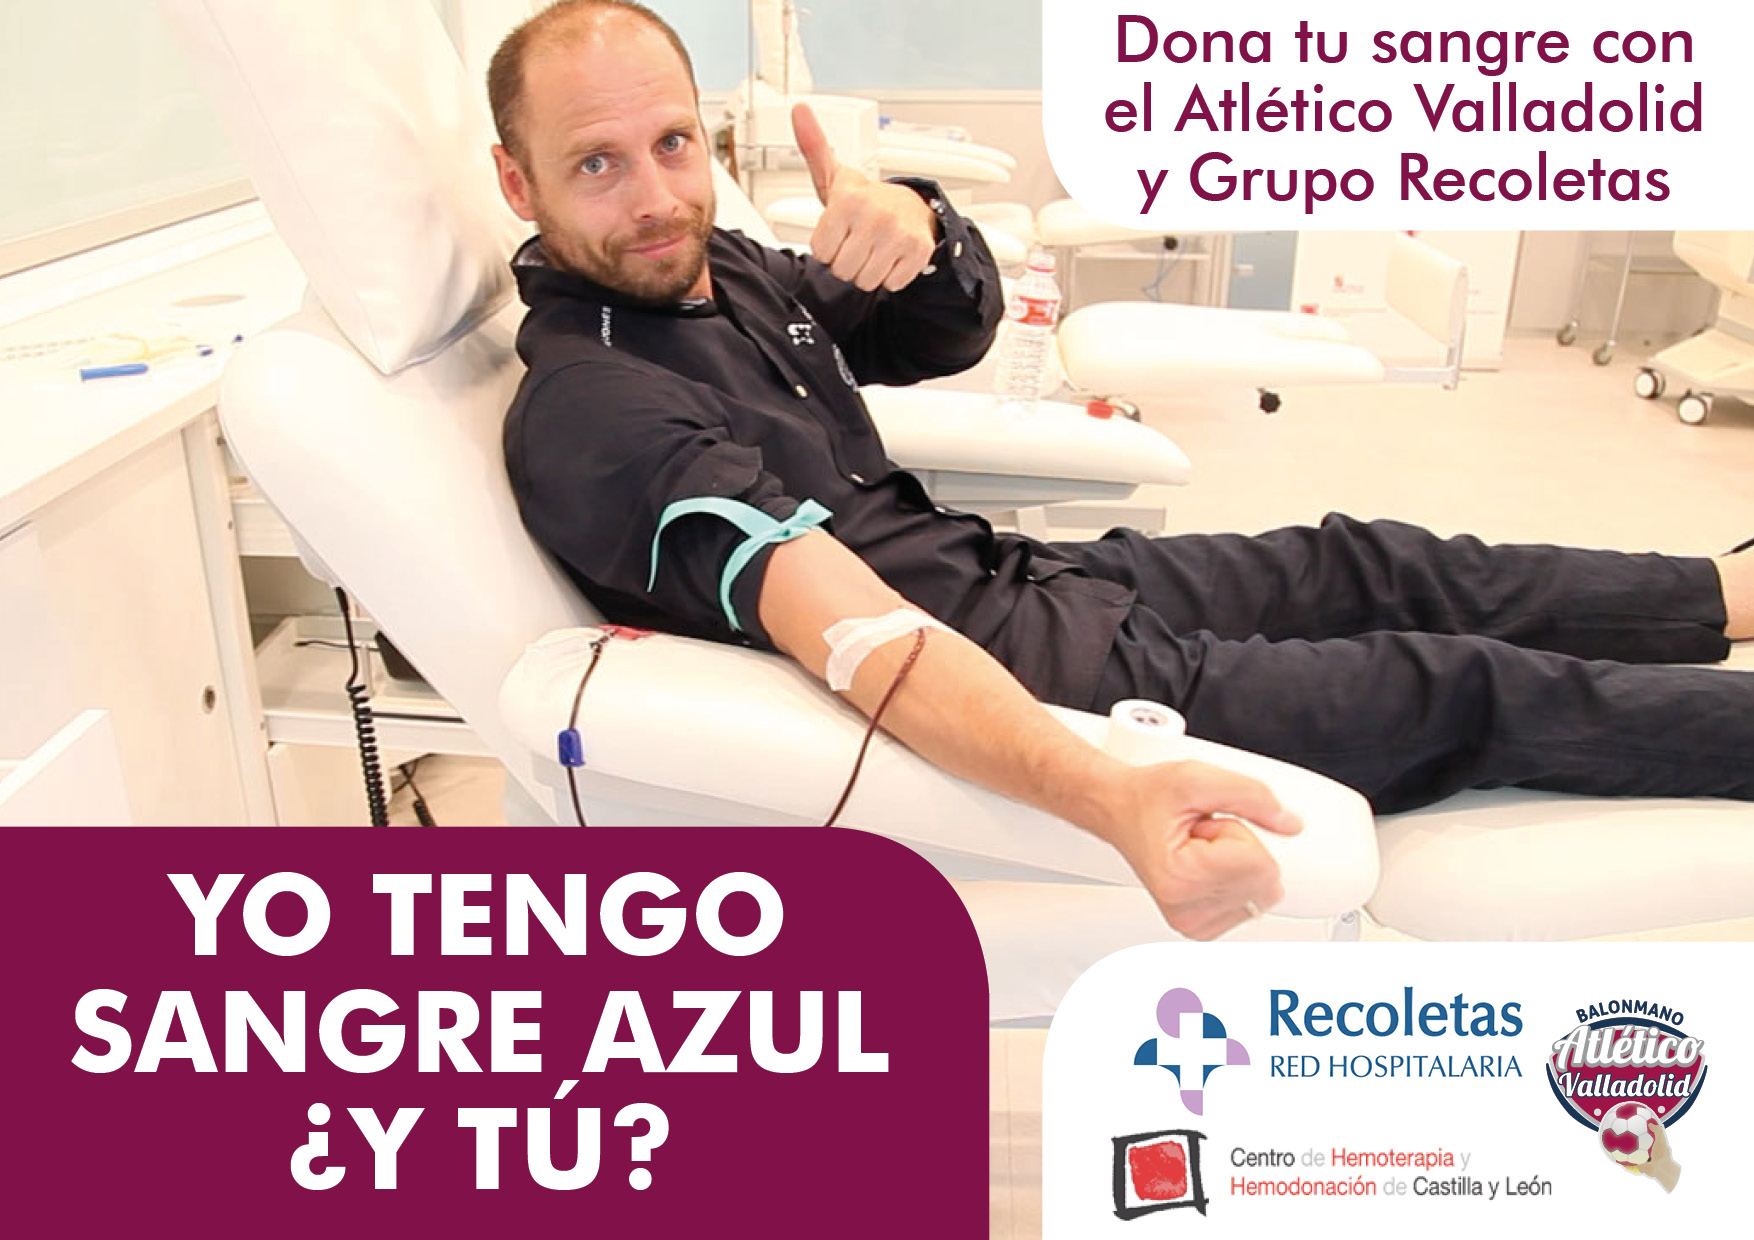 Ven a donar sangre con el Grupo Recoletas y el Atlético Valladolid